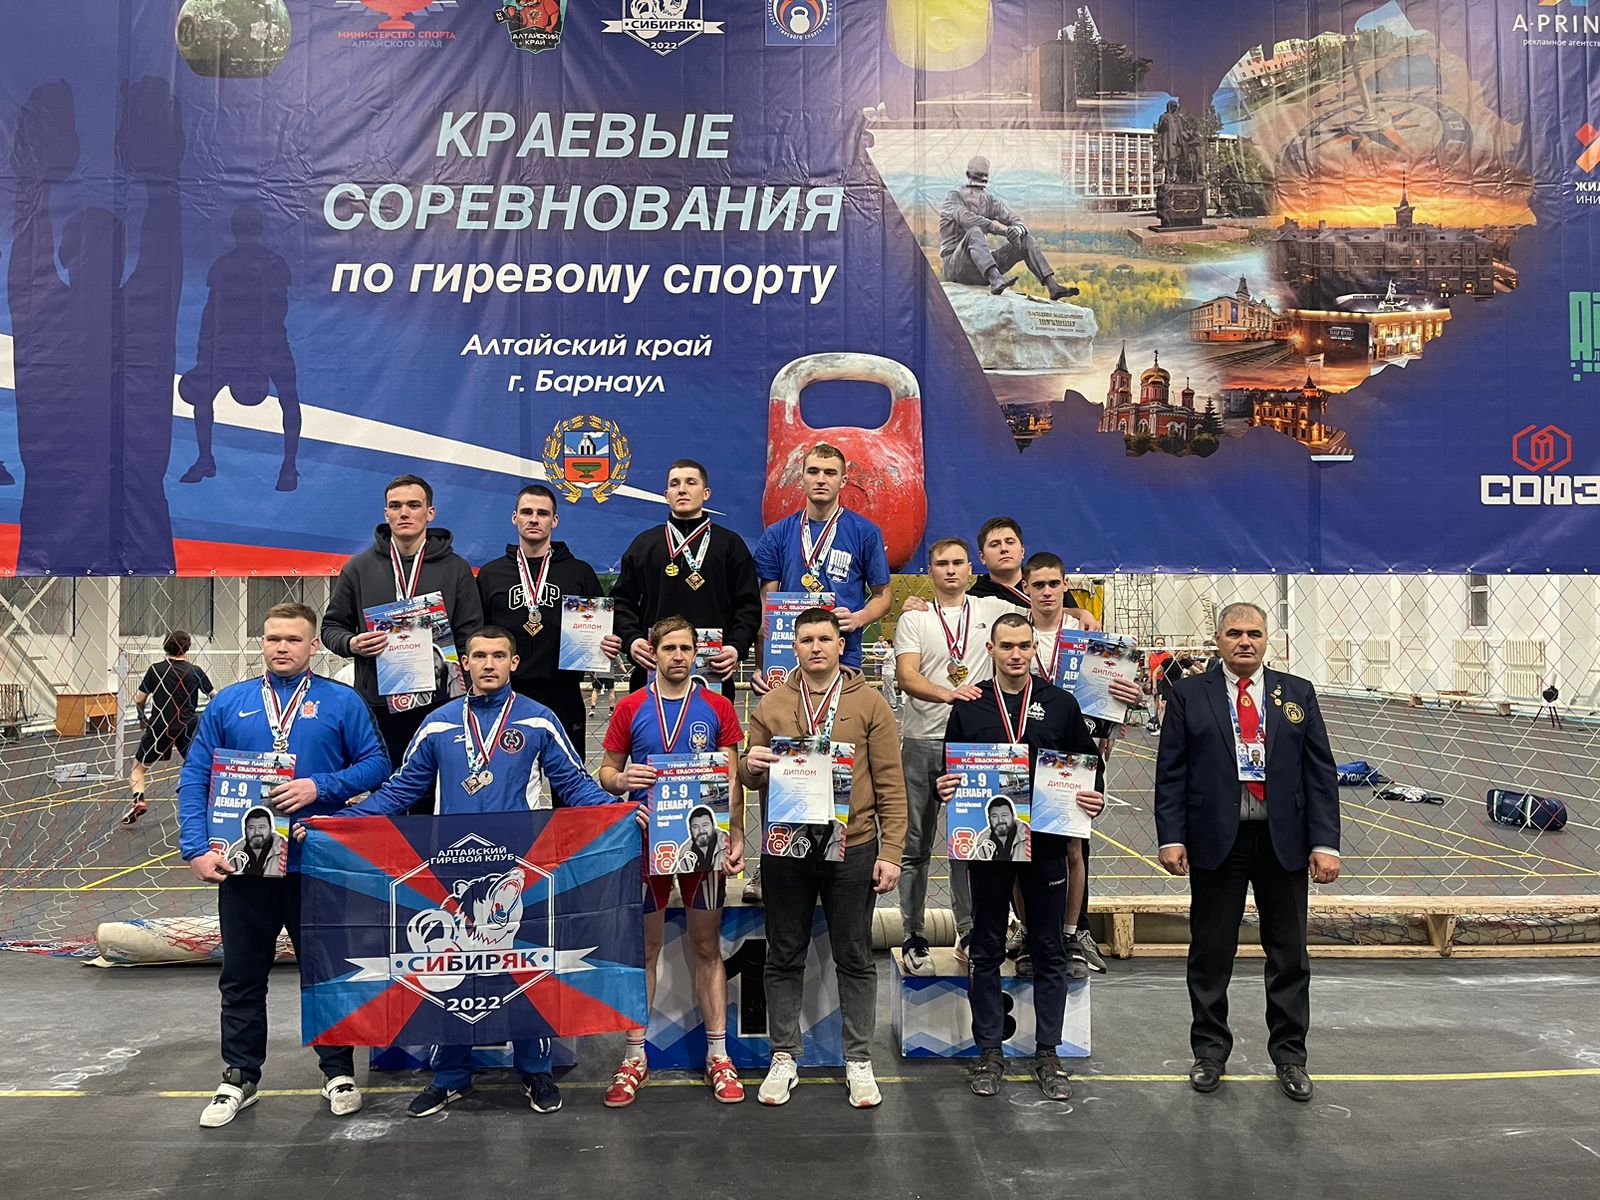 7 по 9 декабря в Барнауле проводился Турнир памяти М.С.Евдокимова по гиревому спорту.